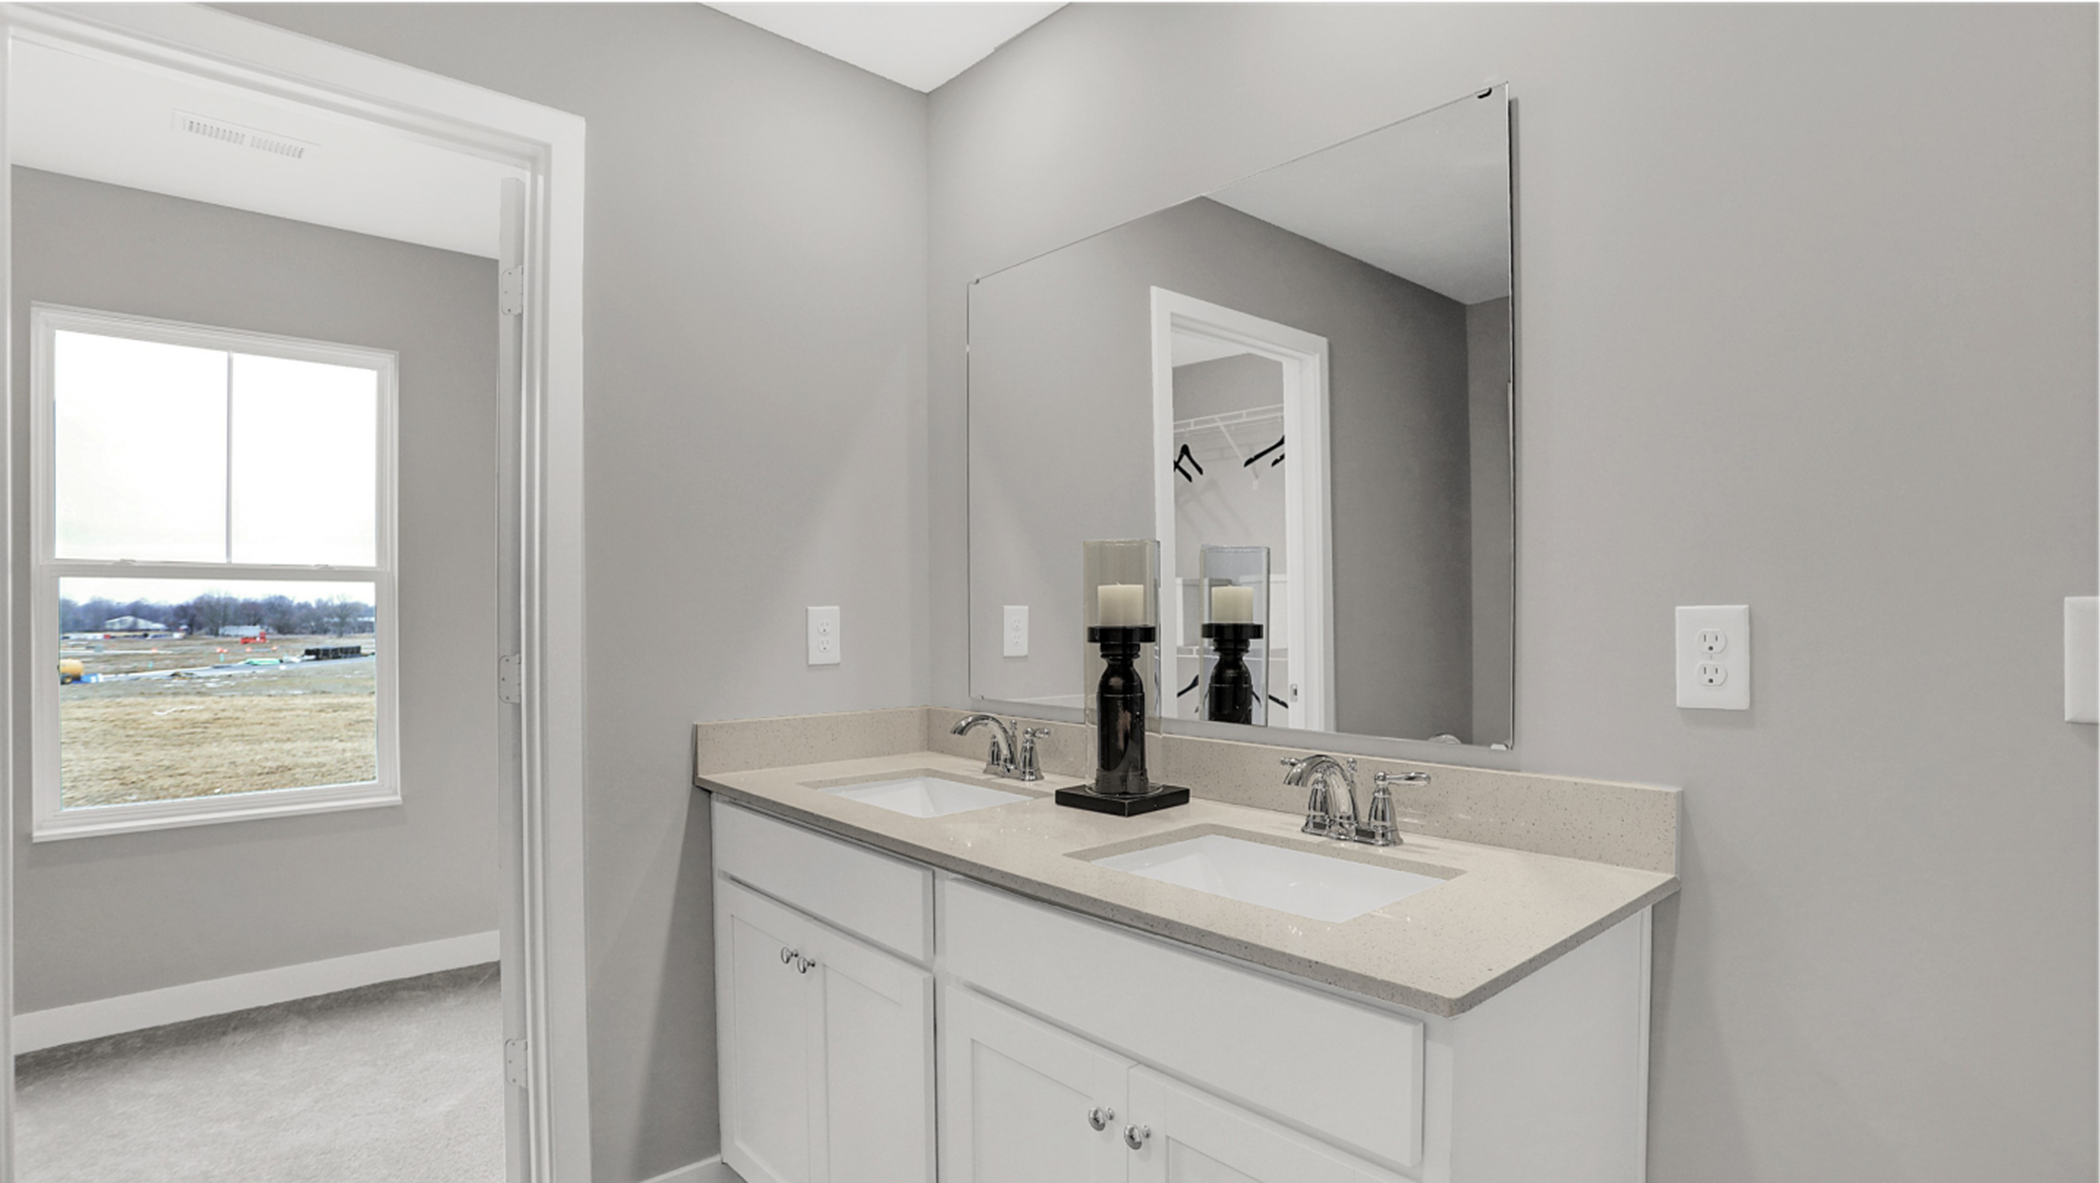 Endeavor Owners Bathroom Vanity